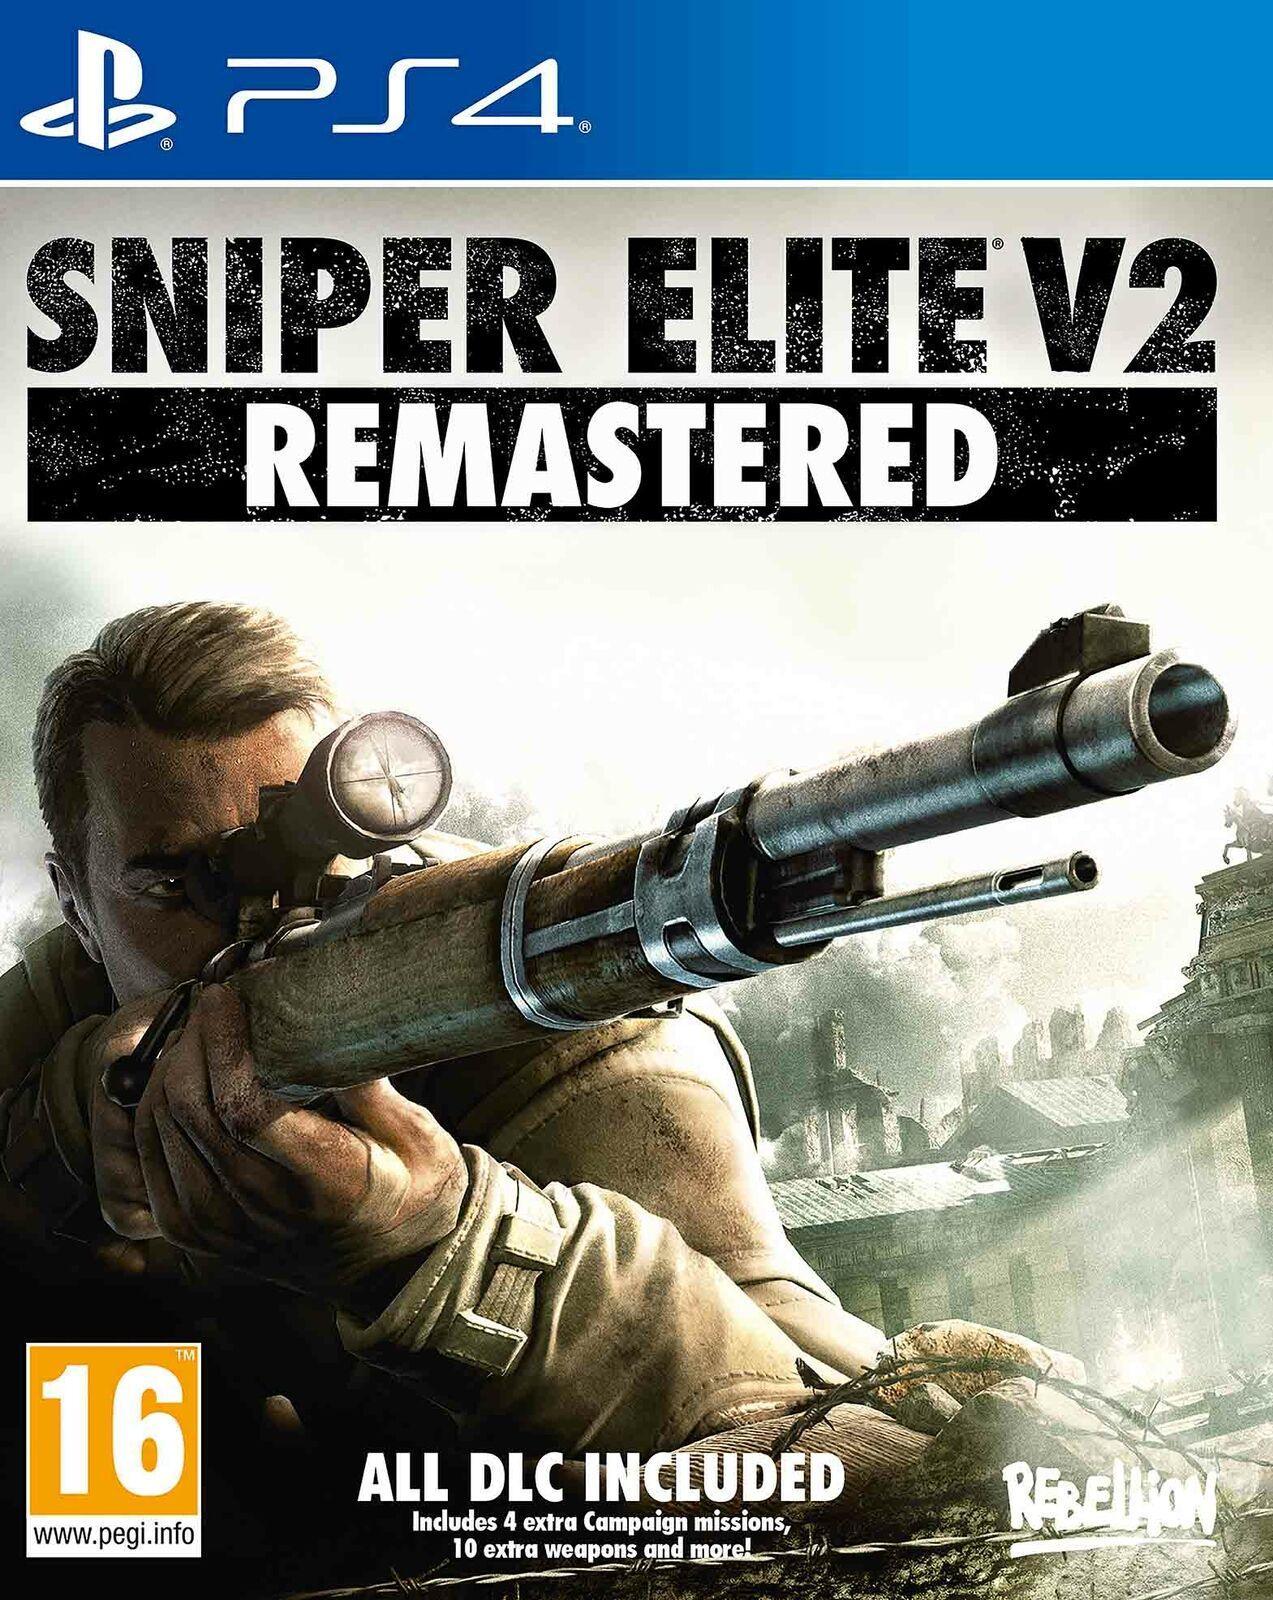 Sniper Elite V2 Remastered / PS4 / Playstation 4 - GD Games 